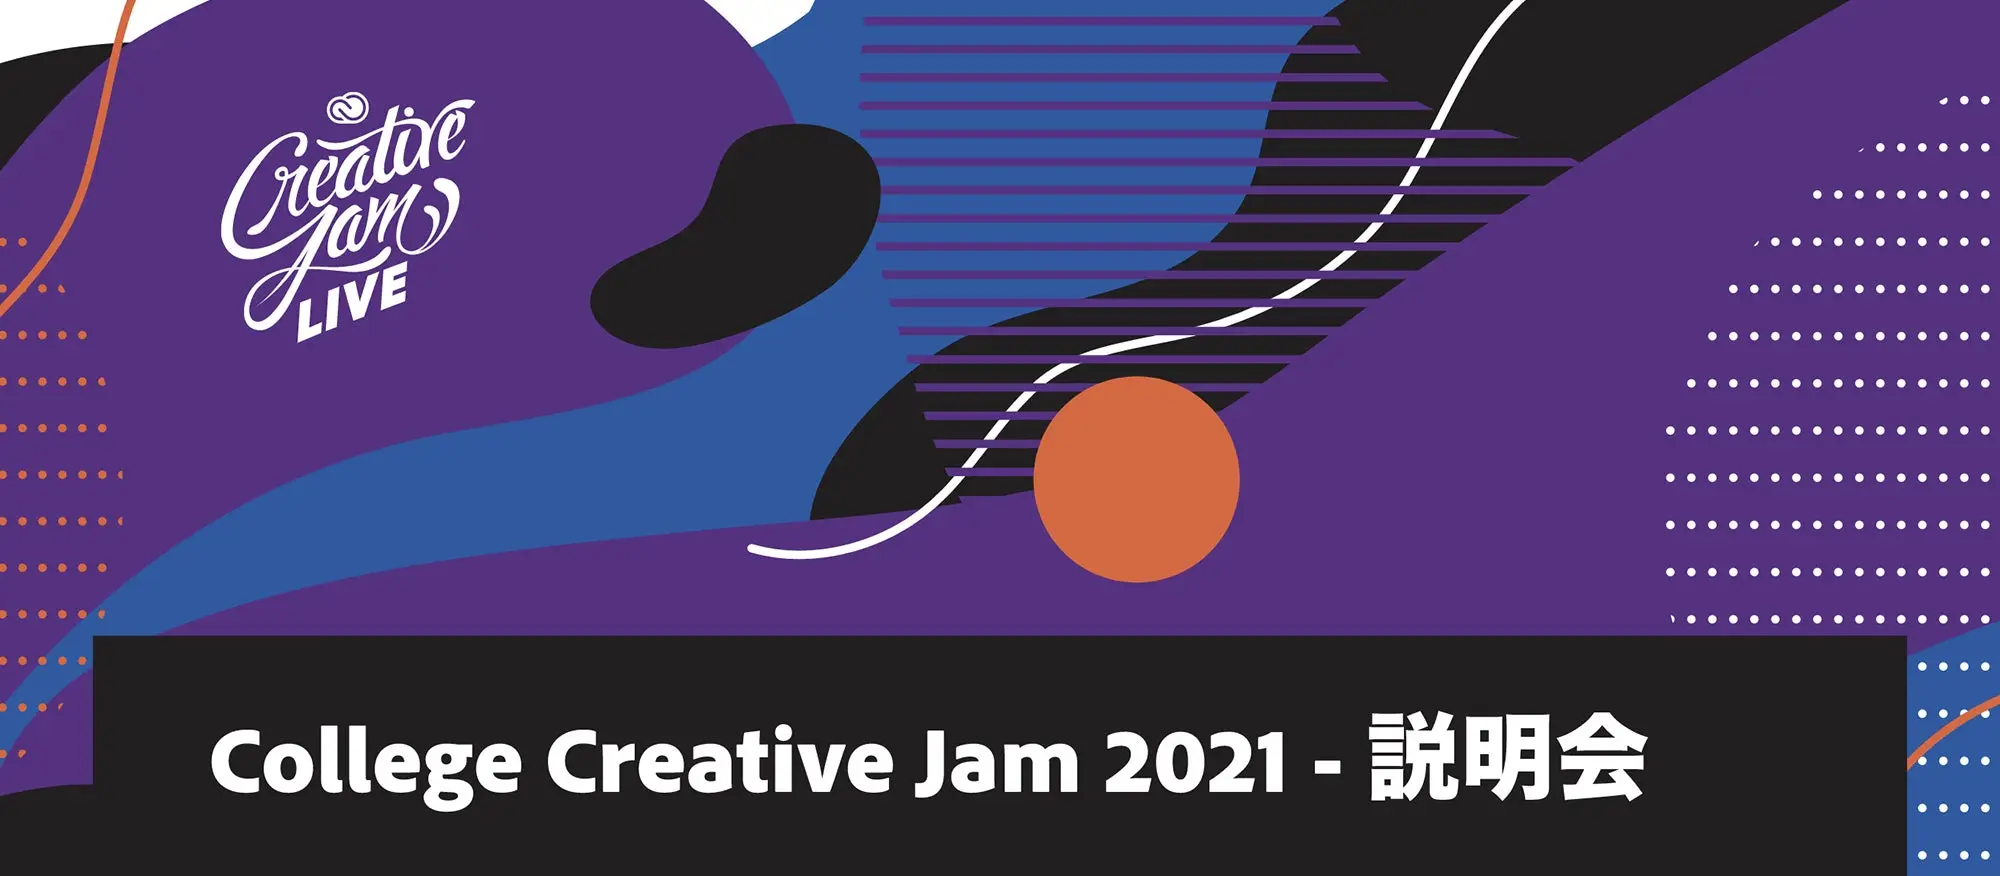 アプリアイディアで社会課題解決を目指す大学生向けコンペCollege Creative Jam 2021始動！　合宿のように学び合う場に